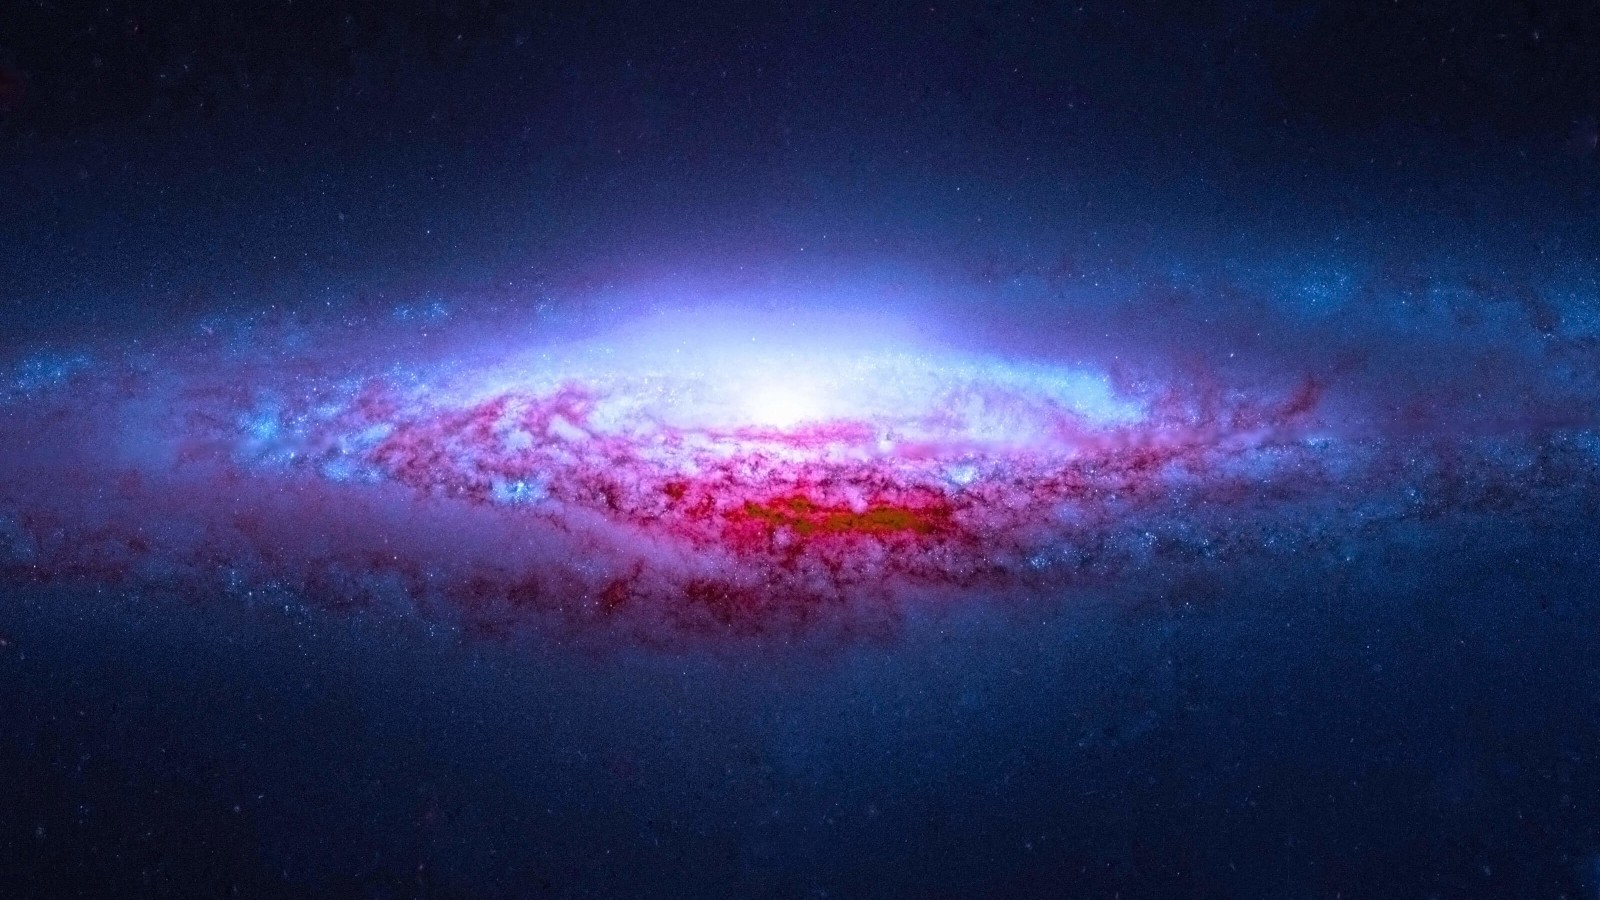 NGC 2683 Spiral Galaxy Wallpaper for Desktop 1600x900